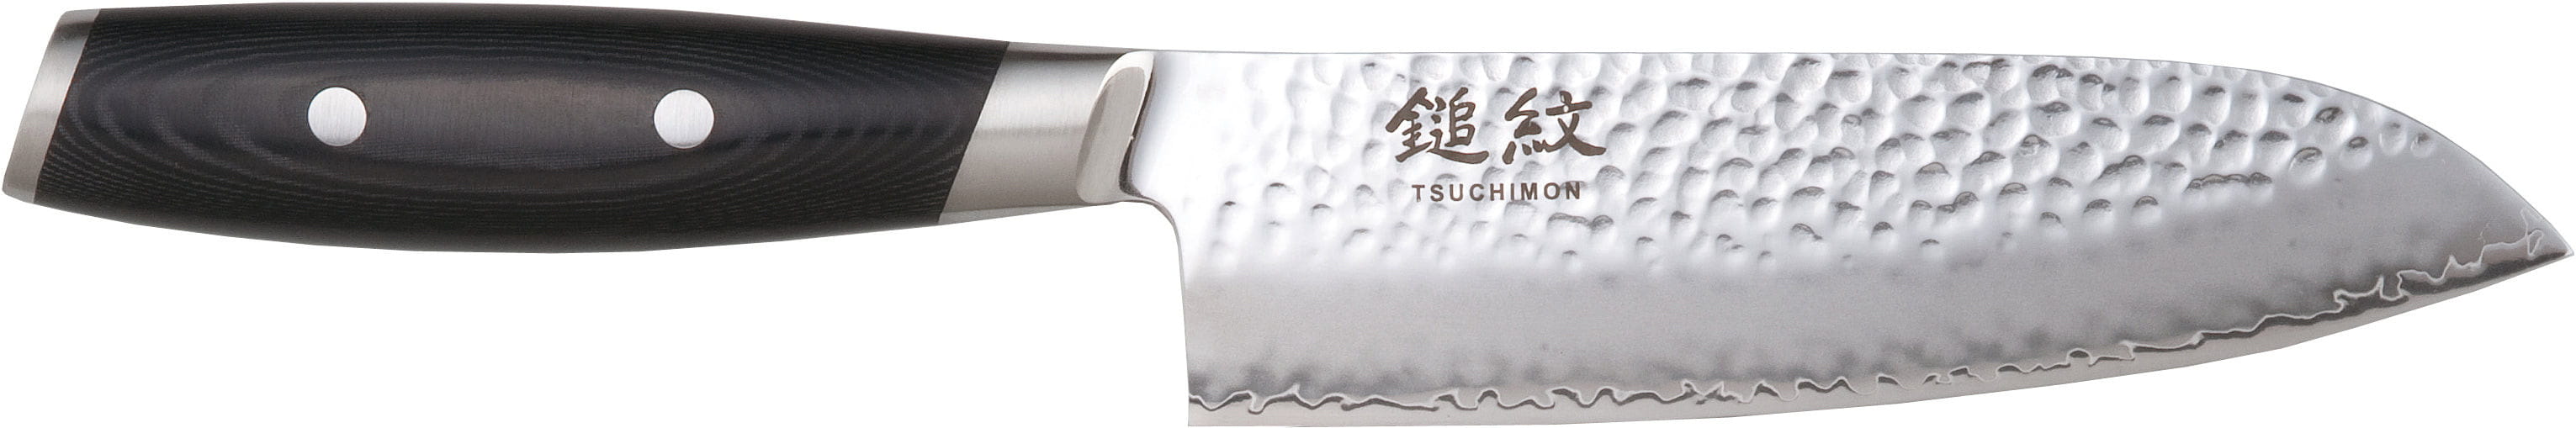 Nóż Yaxell Tsuchimon Santoku, 16,5 cm